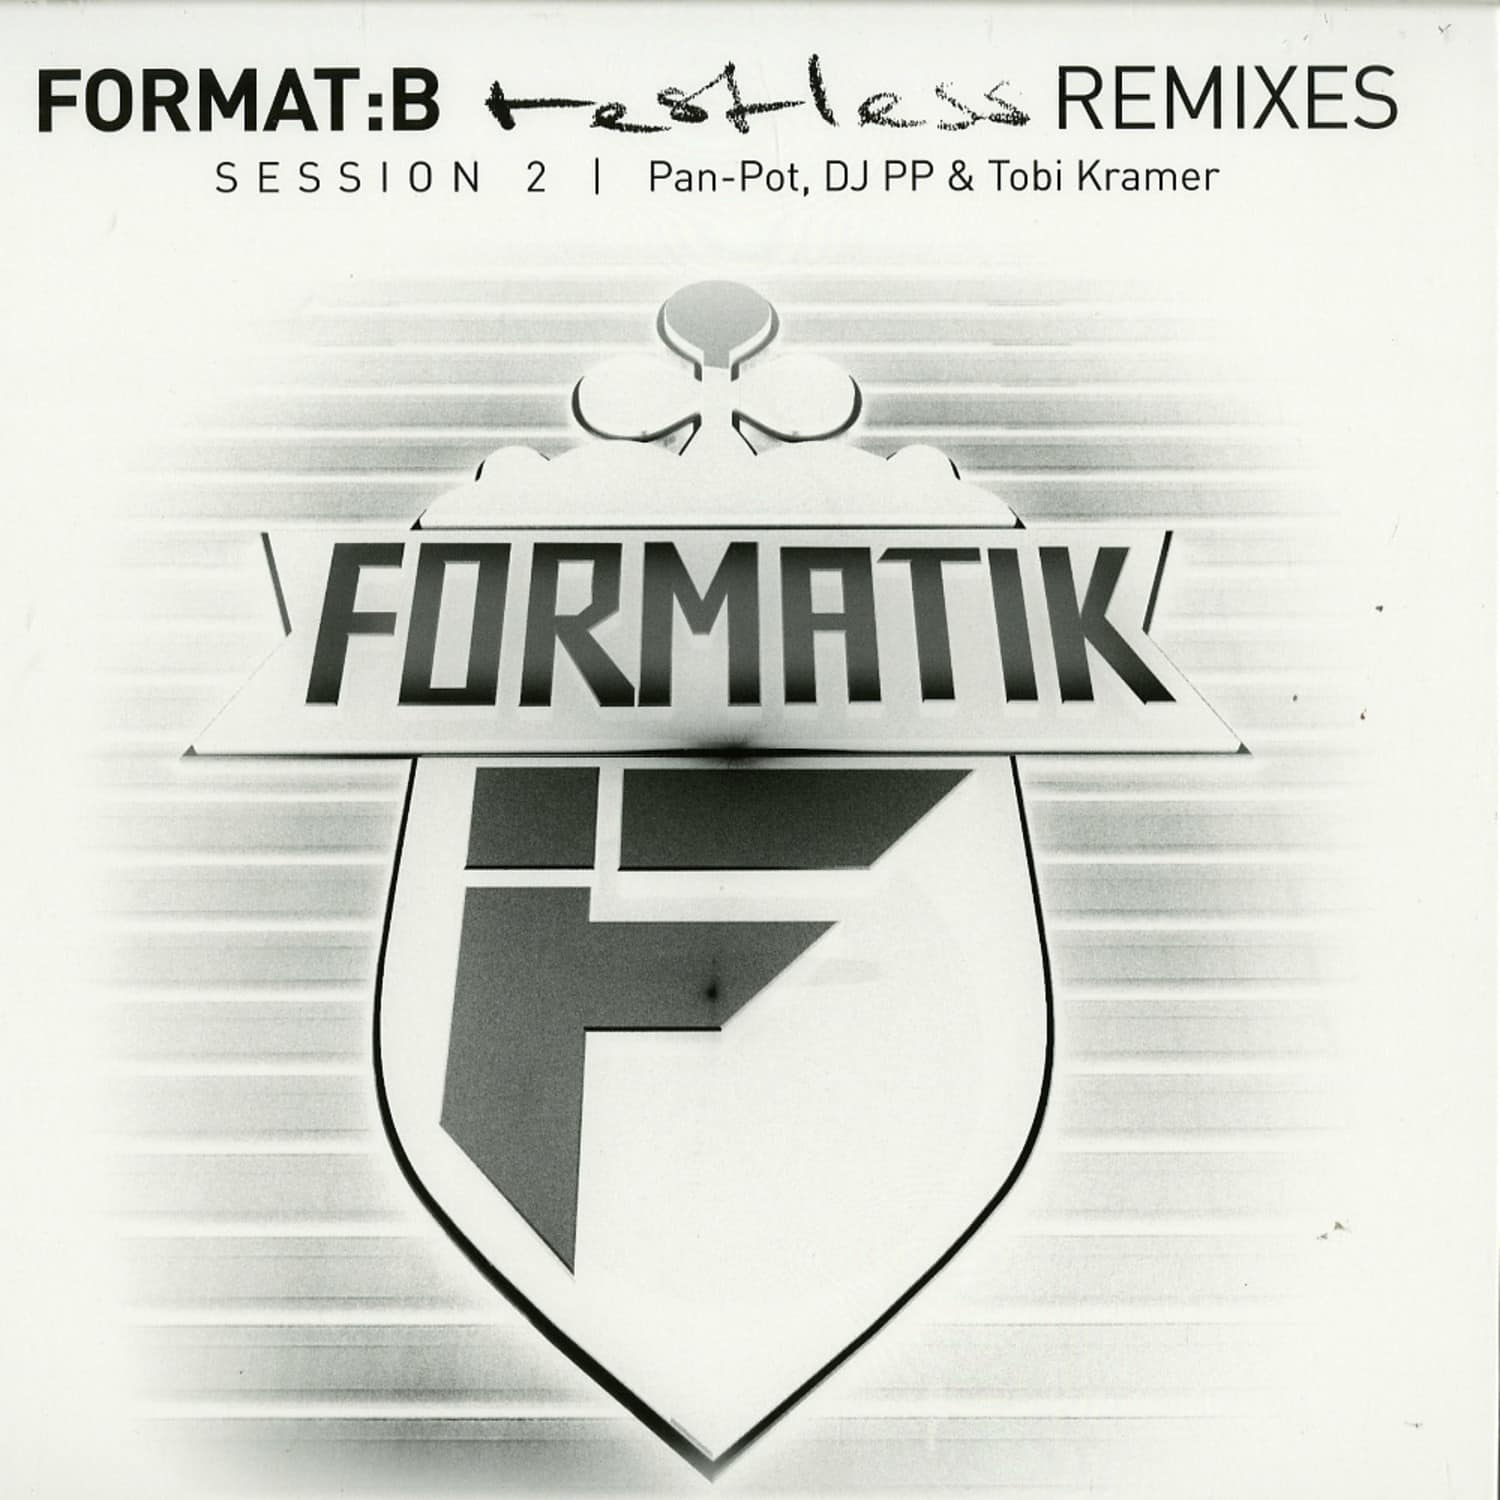 Pan-Pot, Tobi Kramer & DJ PP - Format B Restless Remixes Session 2 